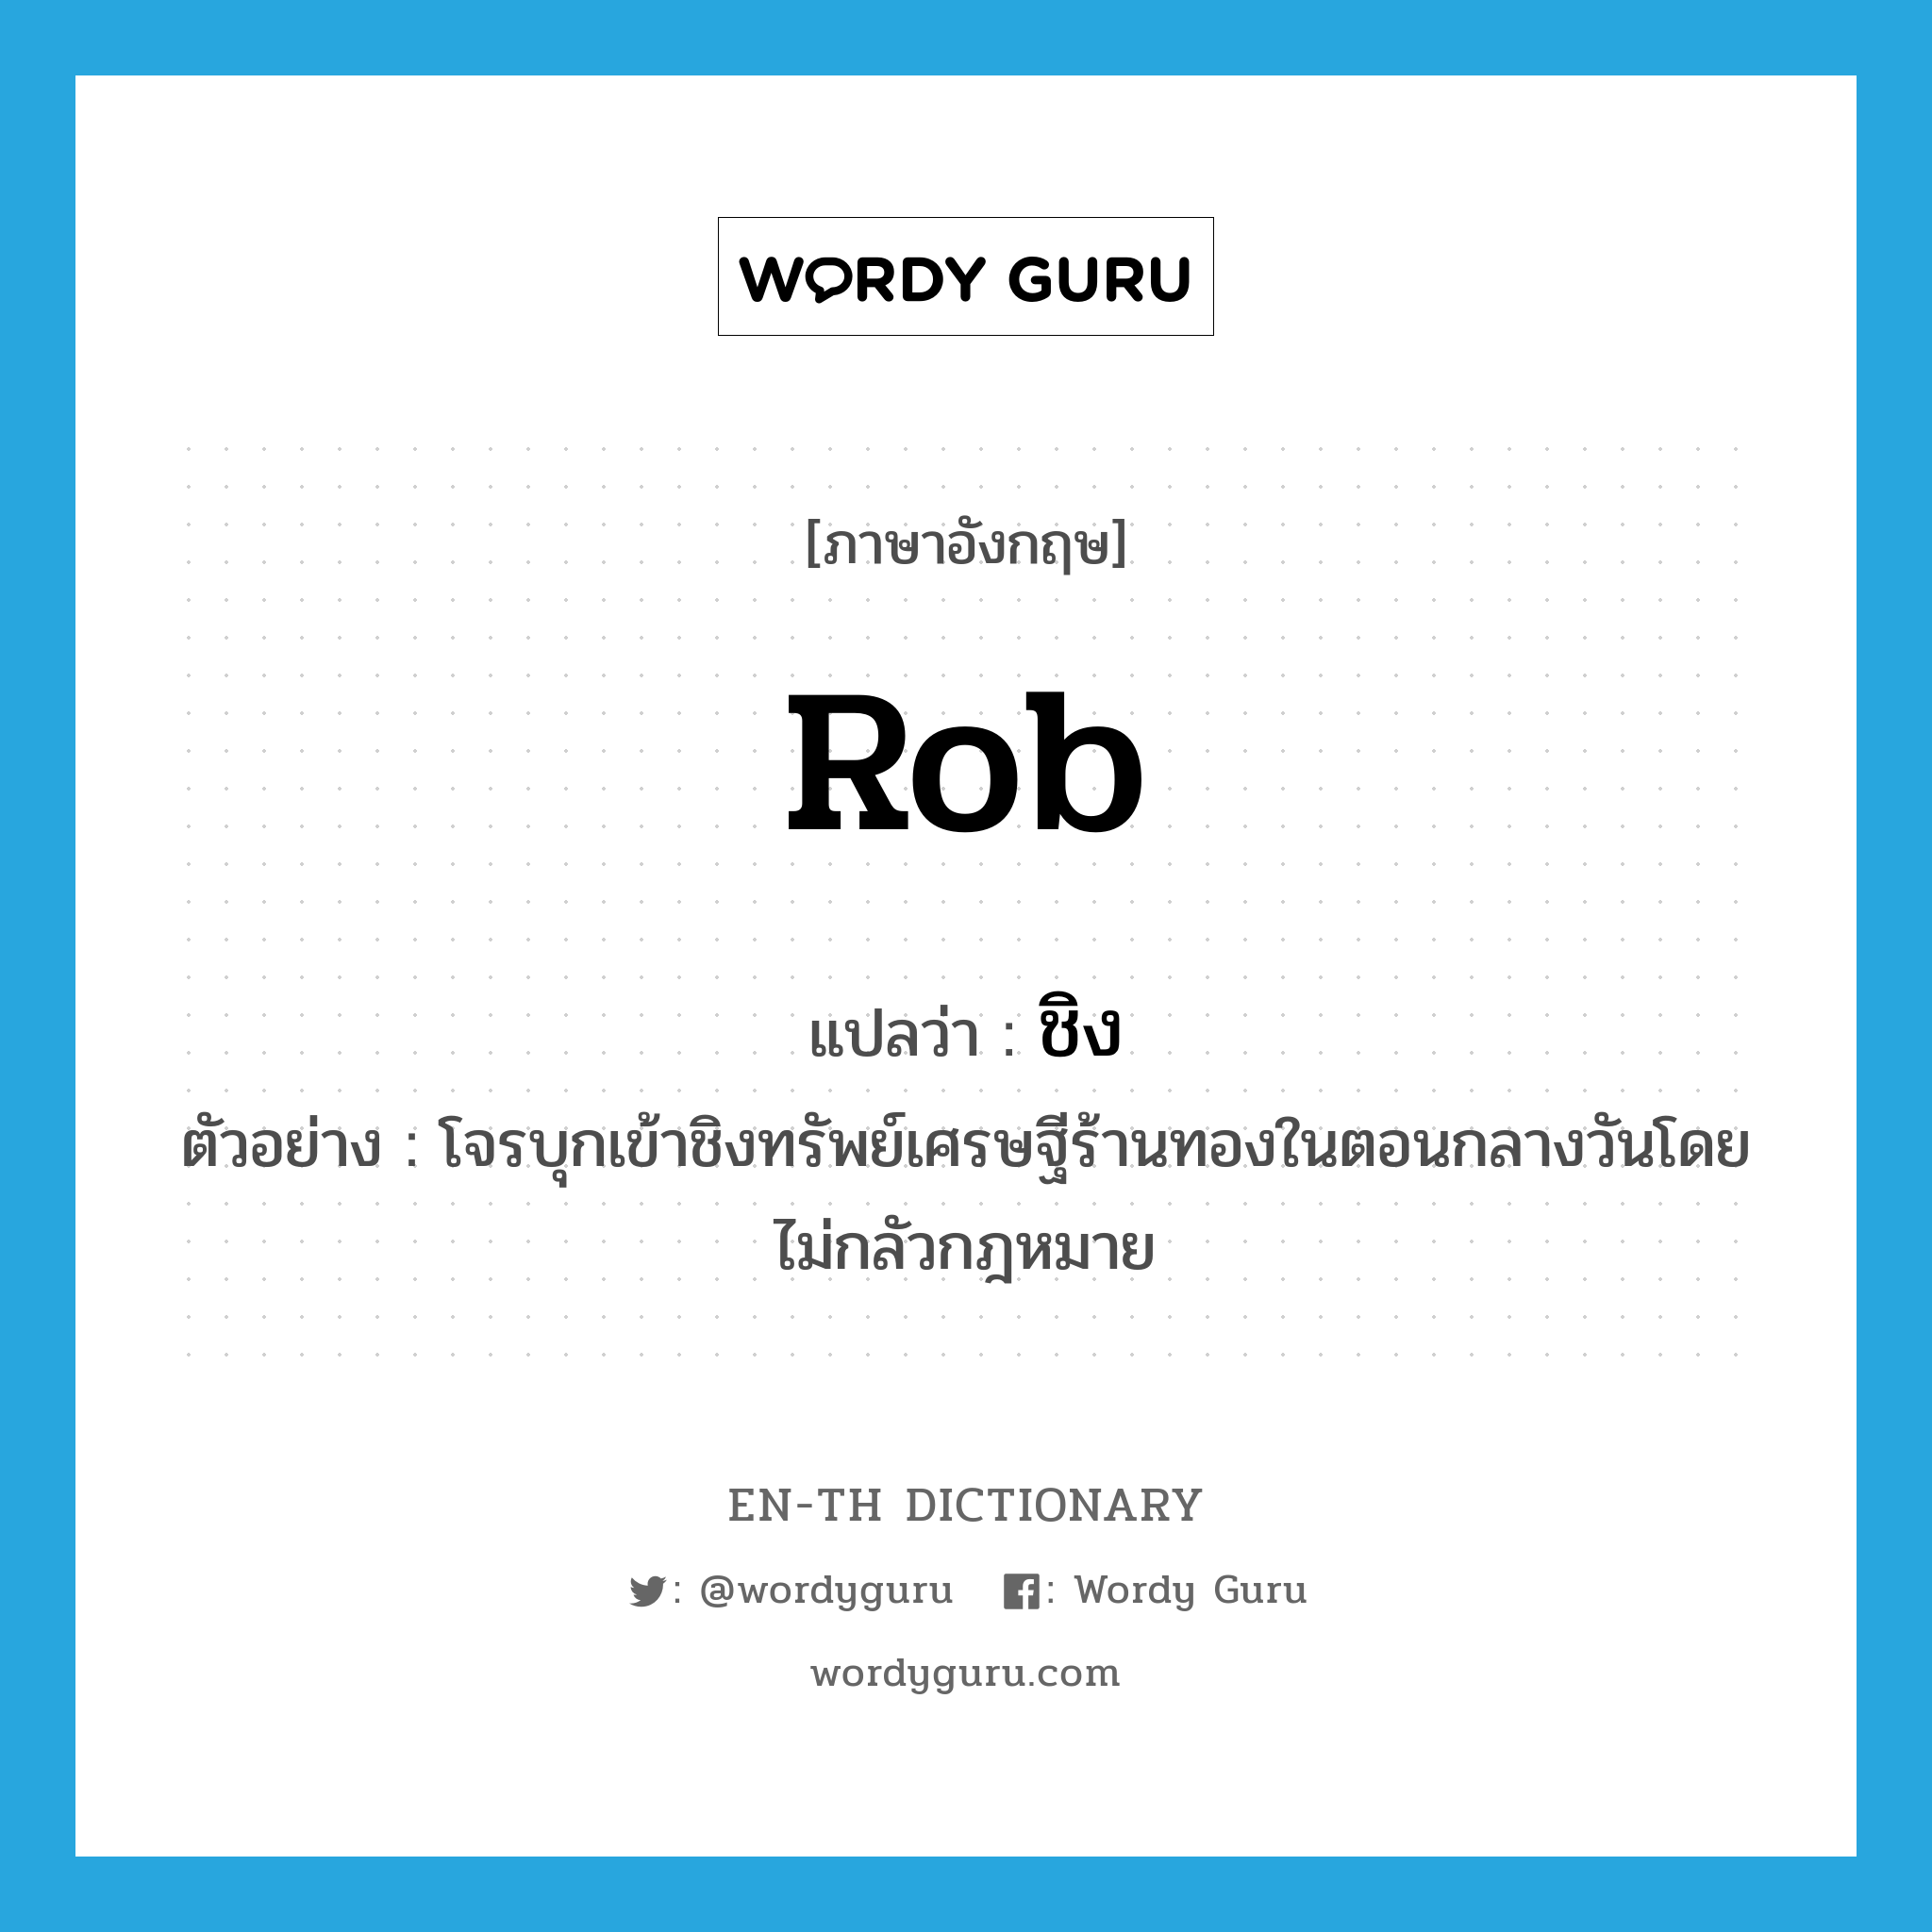 rob แปลว่า?, คำศัพท์ภาษาอังกฤษ rob แปลว่า ชิง ประเภท V ตัวอย่าง โจรบุกเข้าชิงทรัพย์เศรษฐีร้านทองในตอนกลางวันโดยไม่กลัวกฎหมาย หมวด V